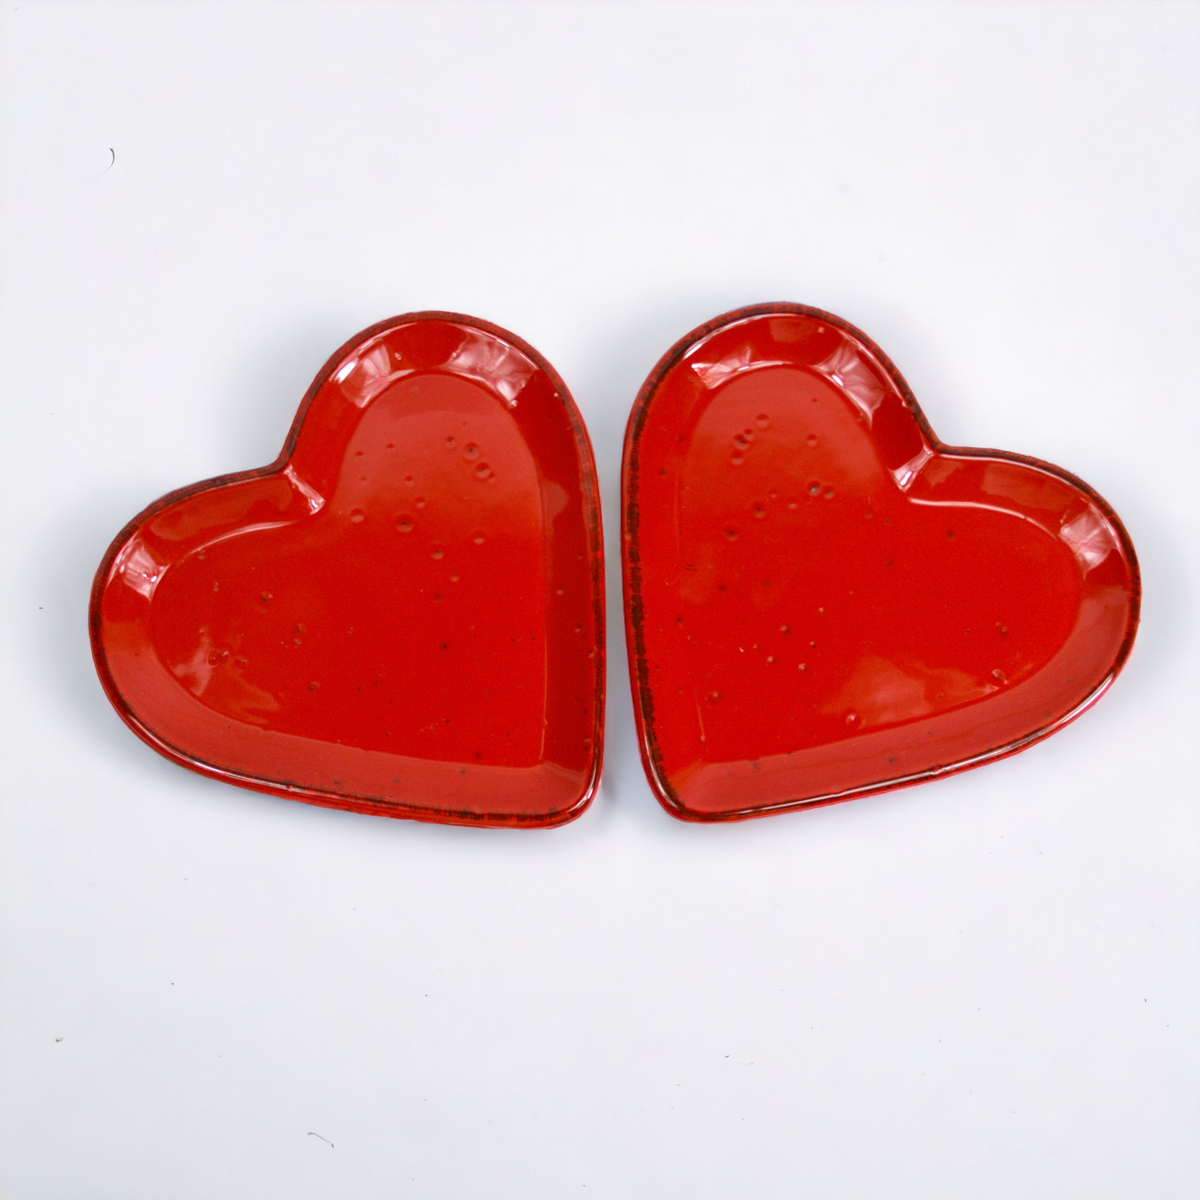 Tuscan Ceramic Heart Plates, Made in Italy - My Italian Decor